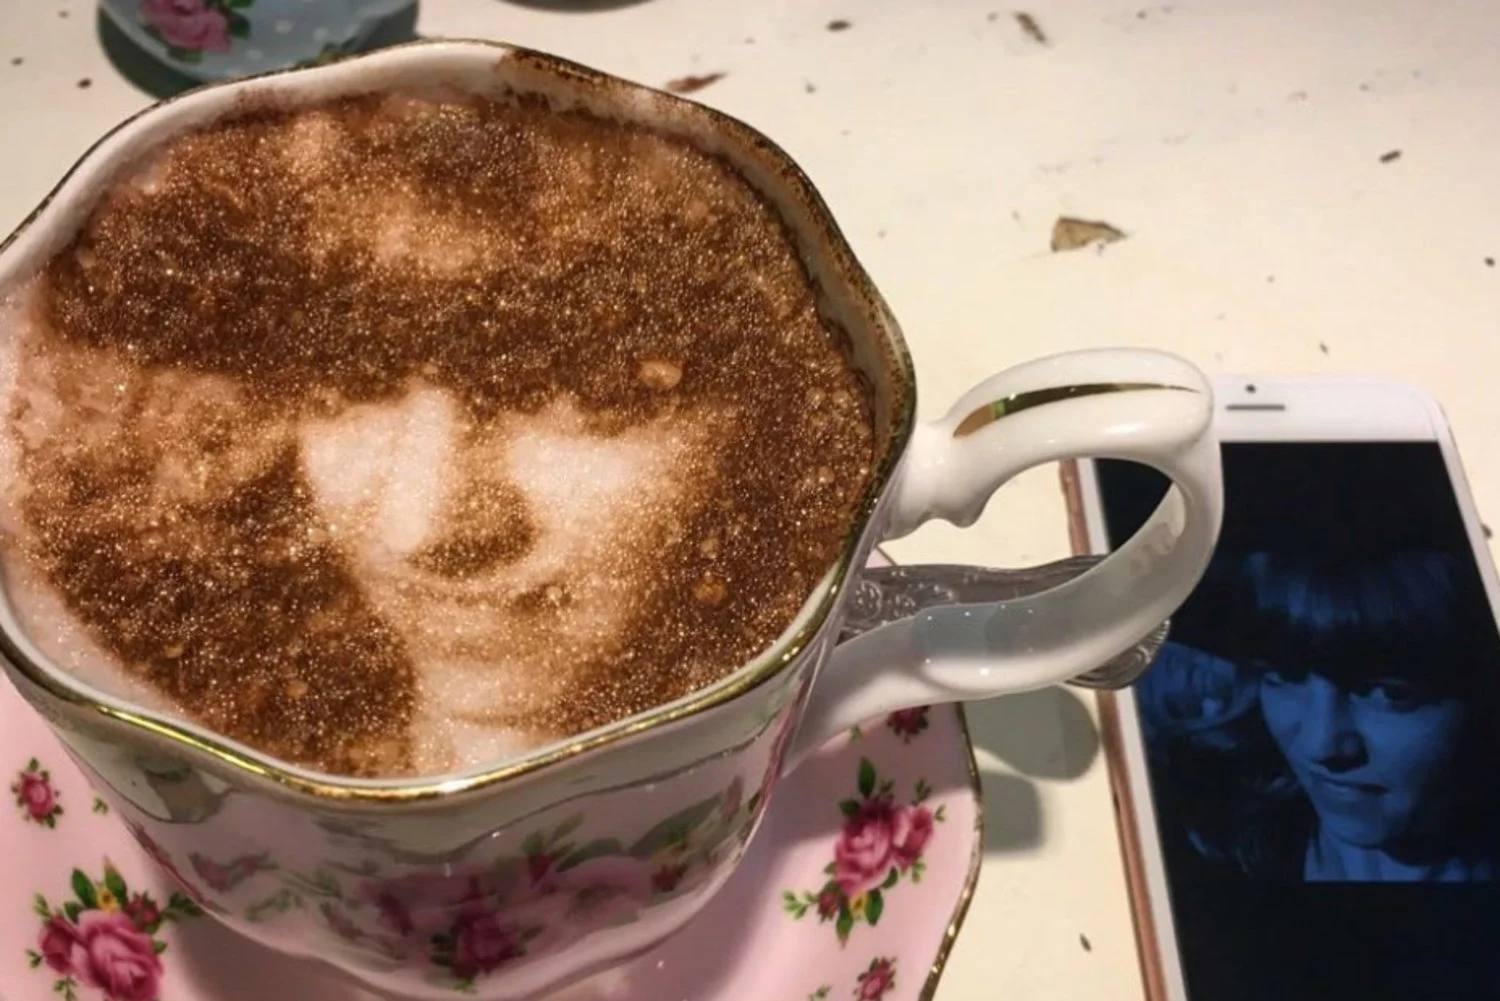 Селфічіно: в Лондоні відкрилось кафе, де можна випити каву зі своїм фото - фото 362104